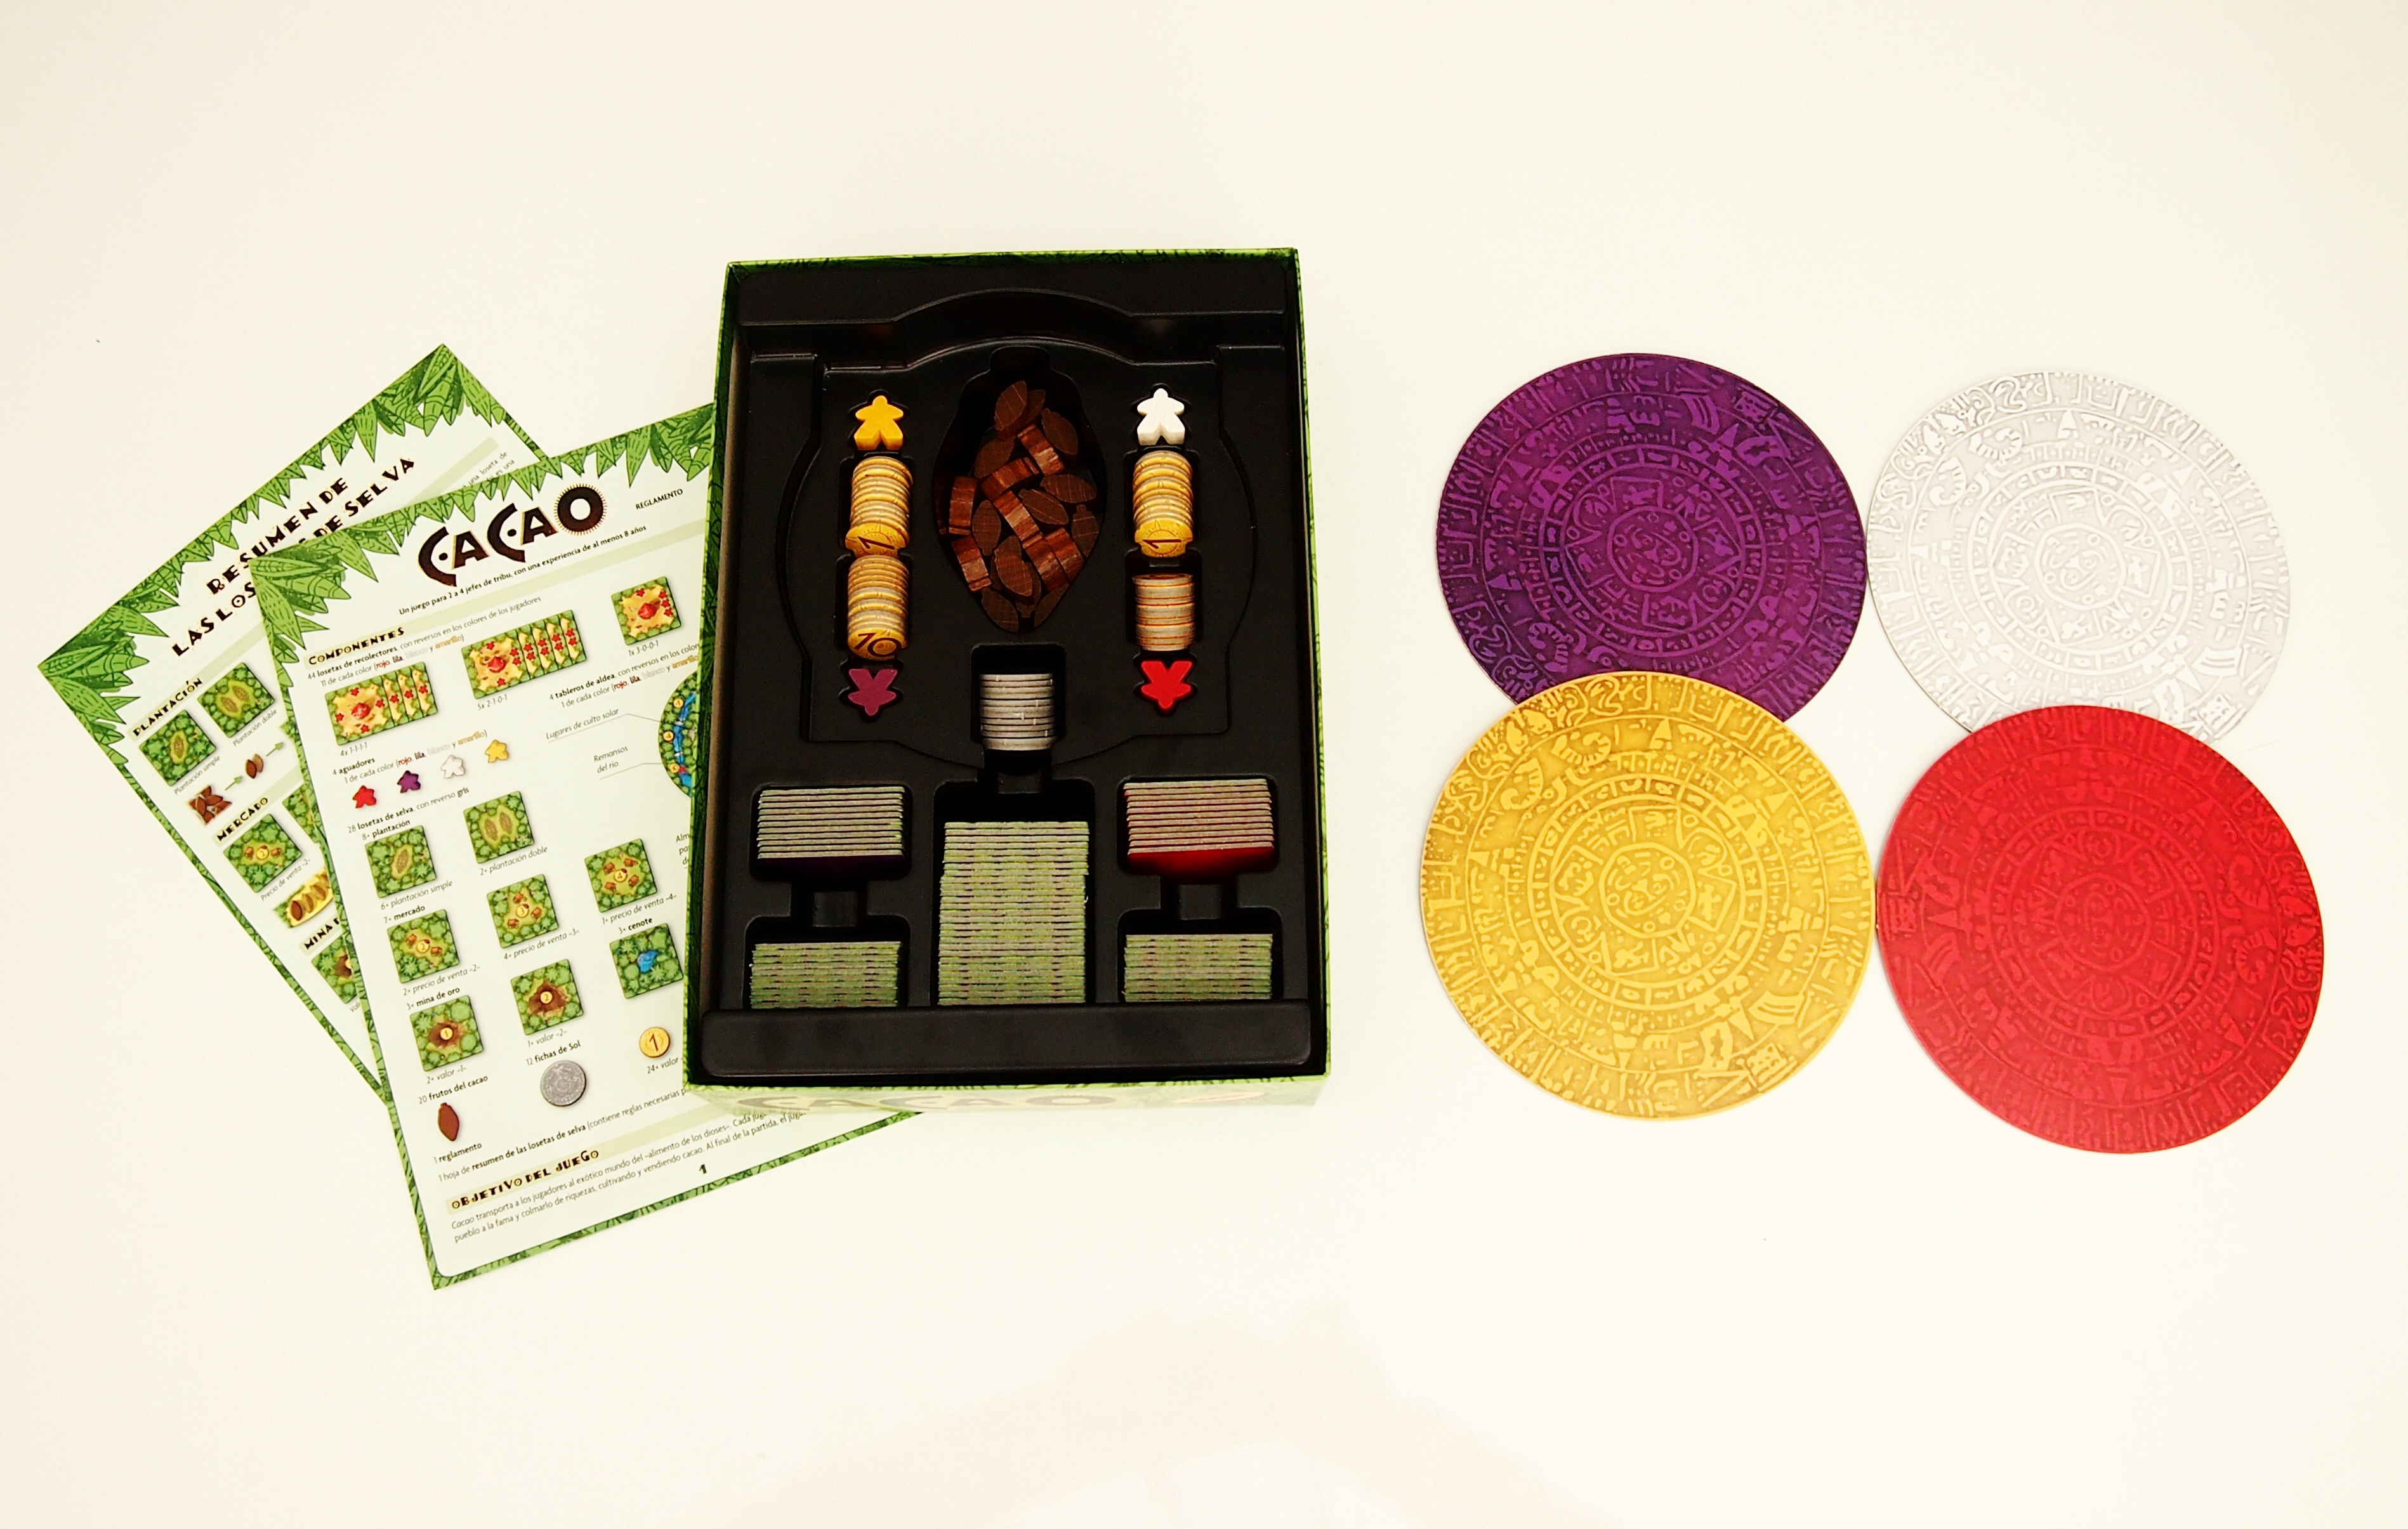 ¡A guardar el juego! La caja de Cacao cuenta con compartimentos para todos los componentes. 